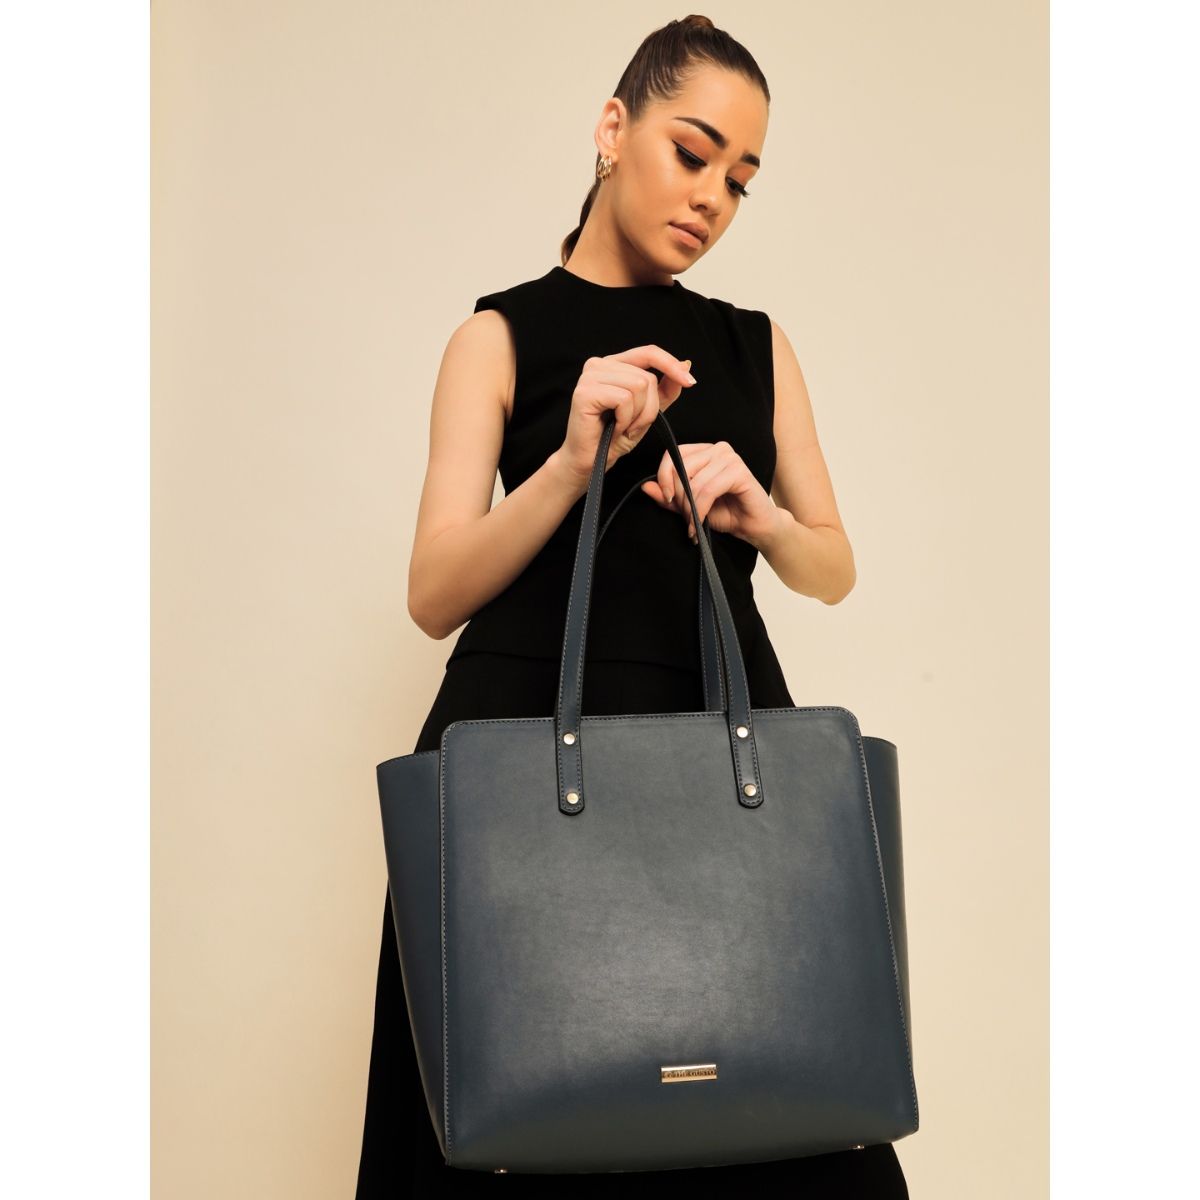 VITAL Bag Black Shoulder Bag | Black Shoulder Bag for Women – Steve Madden